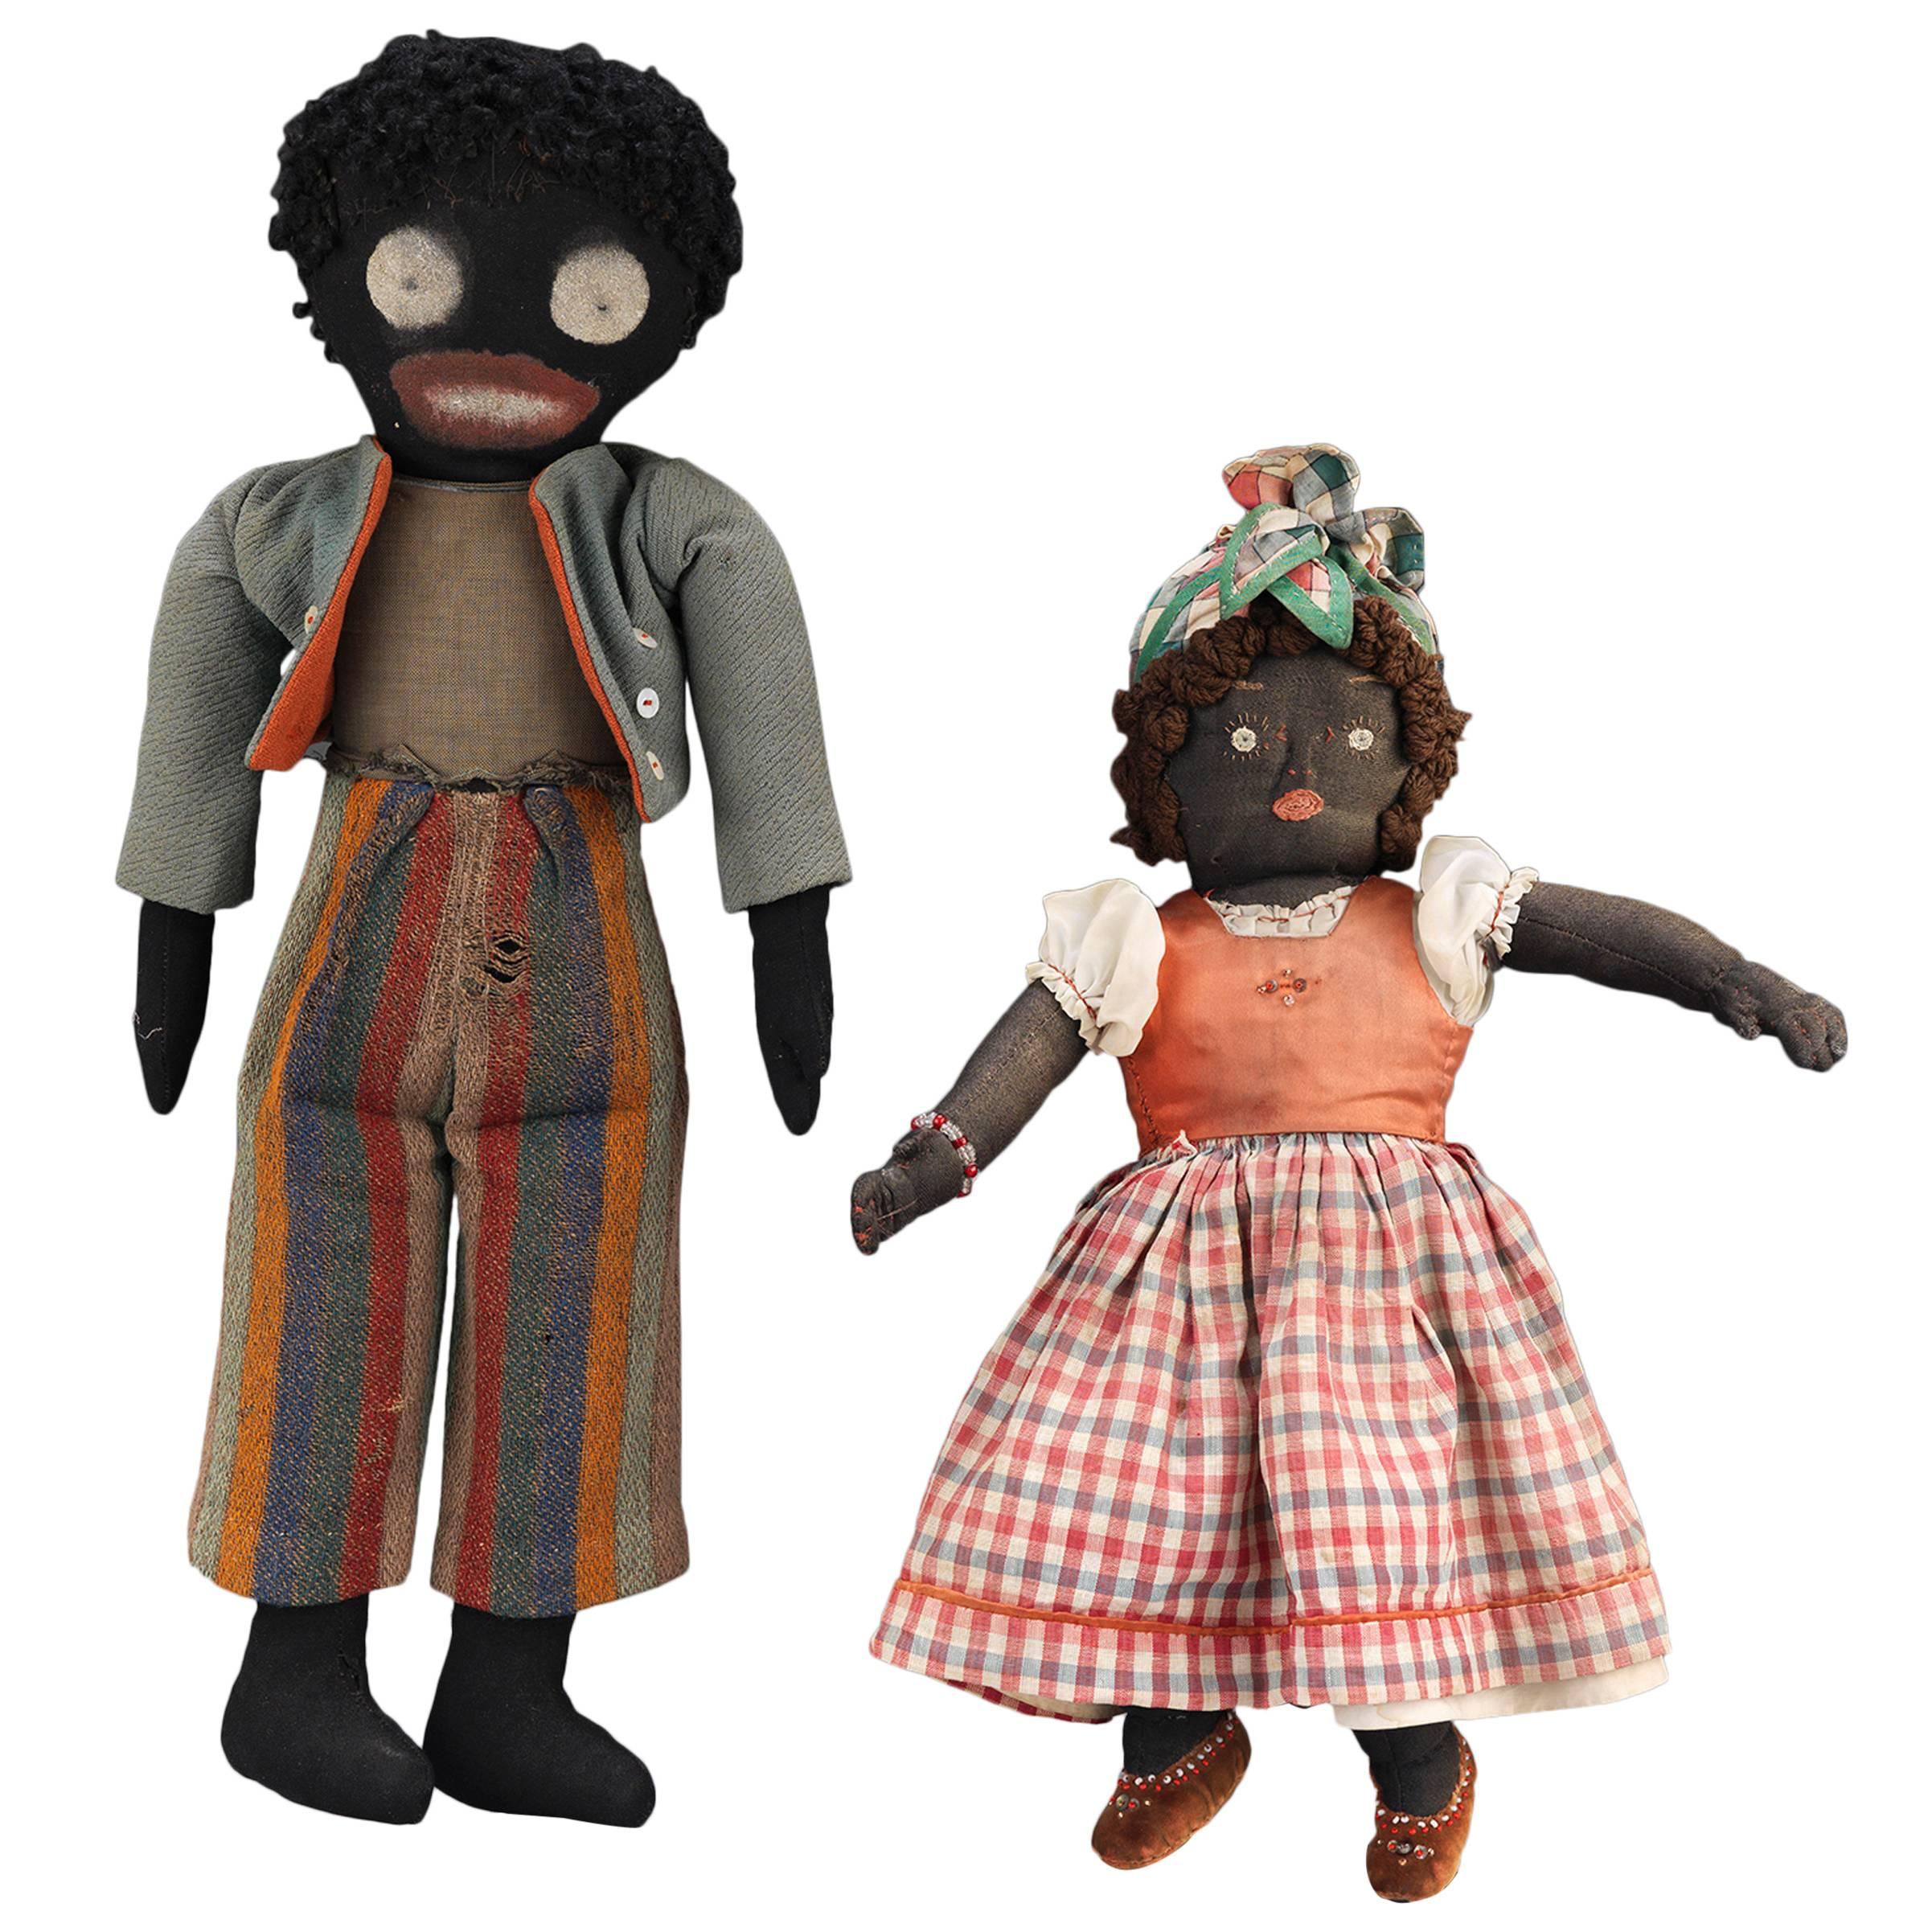 Two Early 20th Century Folk Art Dolls